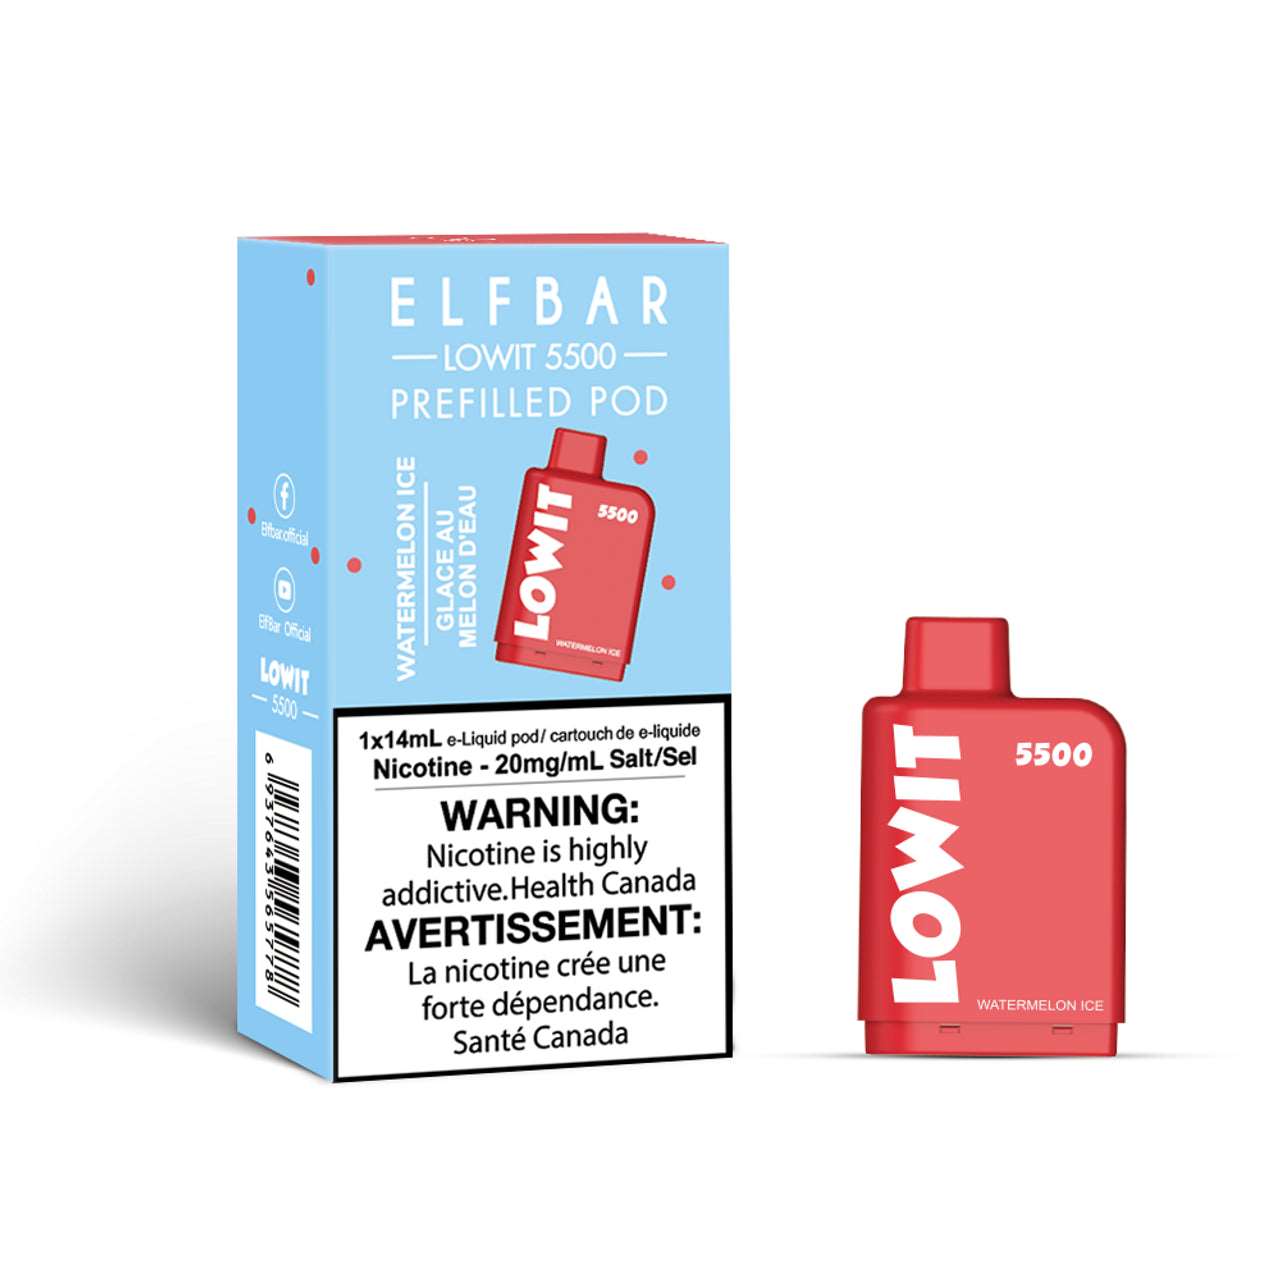 ELFBAR - LOW IT WATERMELON ICE 5500 - Clutch Vape